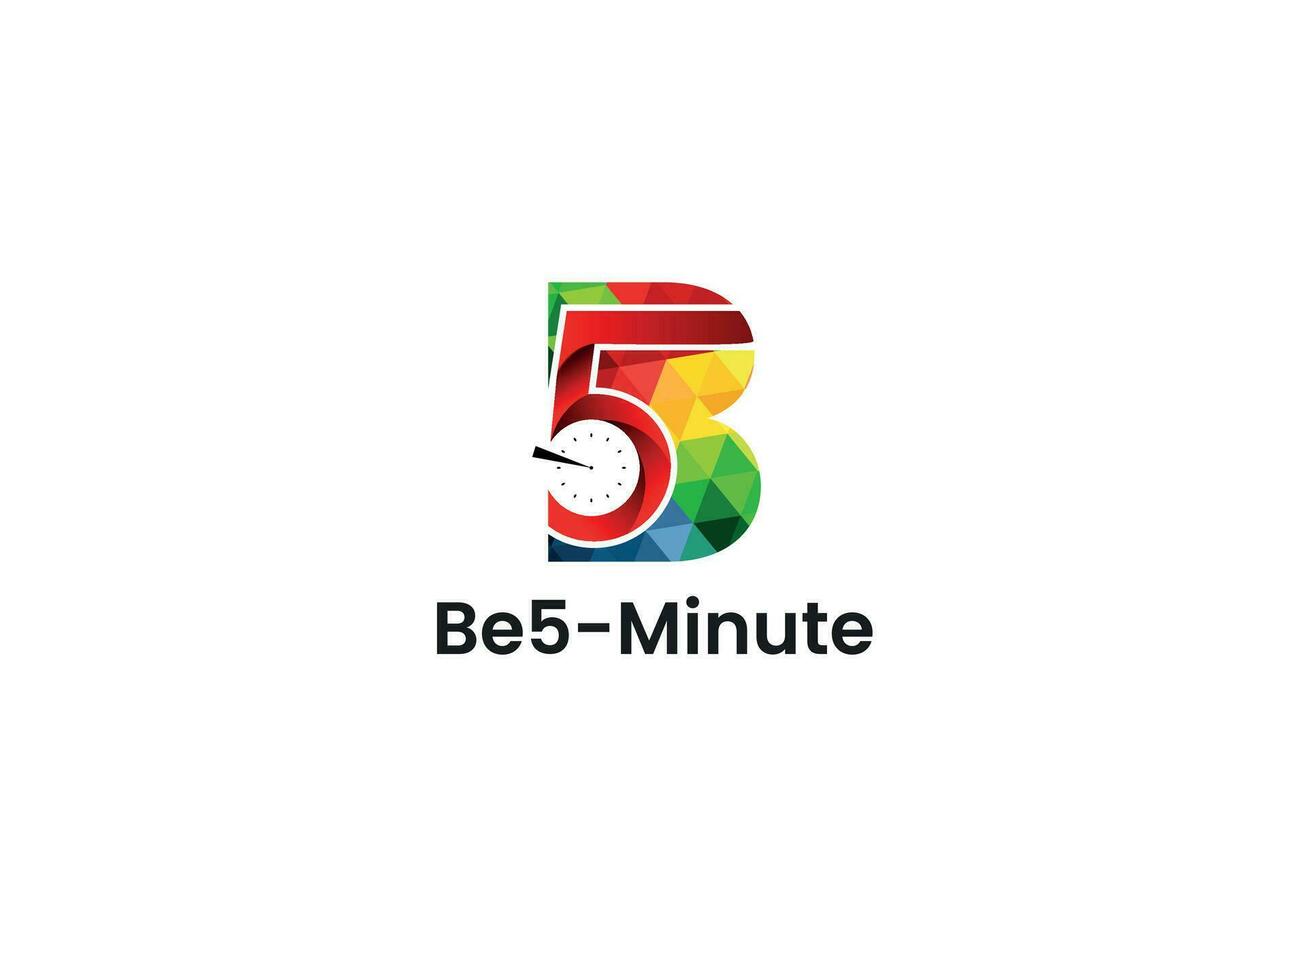 profesional moderno minimalista bajo escuela politécnica be5-minute logo diseño con letra b, 5, reloj y polígono textura. vector